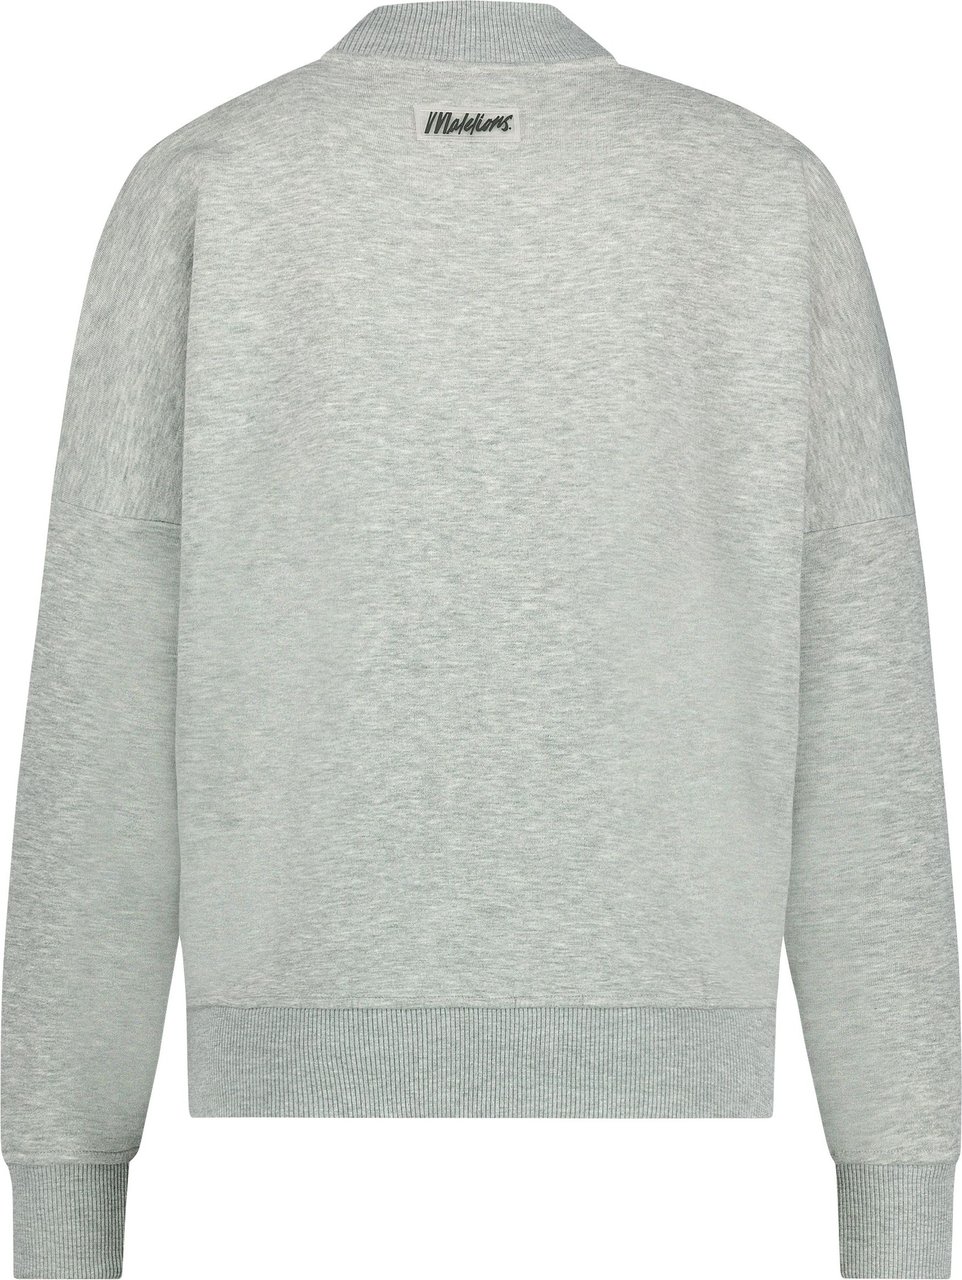 Malelions Women Brand Sweater Grijs